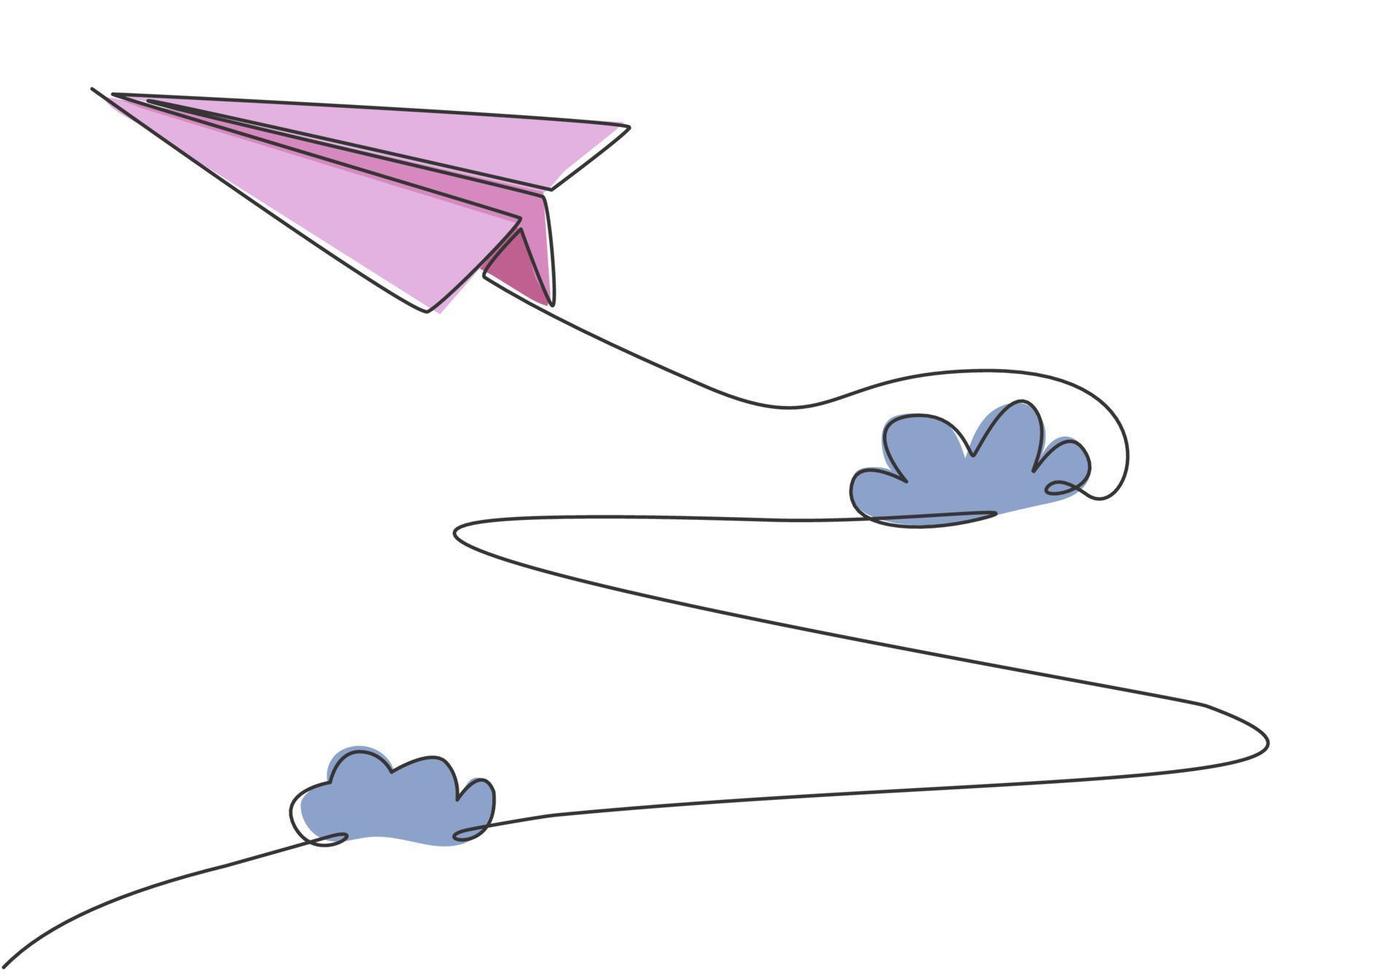 dibujo de línea continua única de avión de papel volando alto a través de las nubes sobre fondo blanco. juguete de papel origami para niños. concepto de minimalismo dinámico dibujo de una línea diseño gráfico ilustración vectorial vector